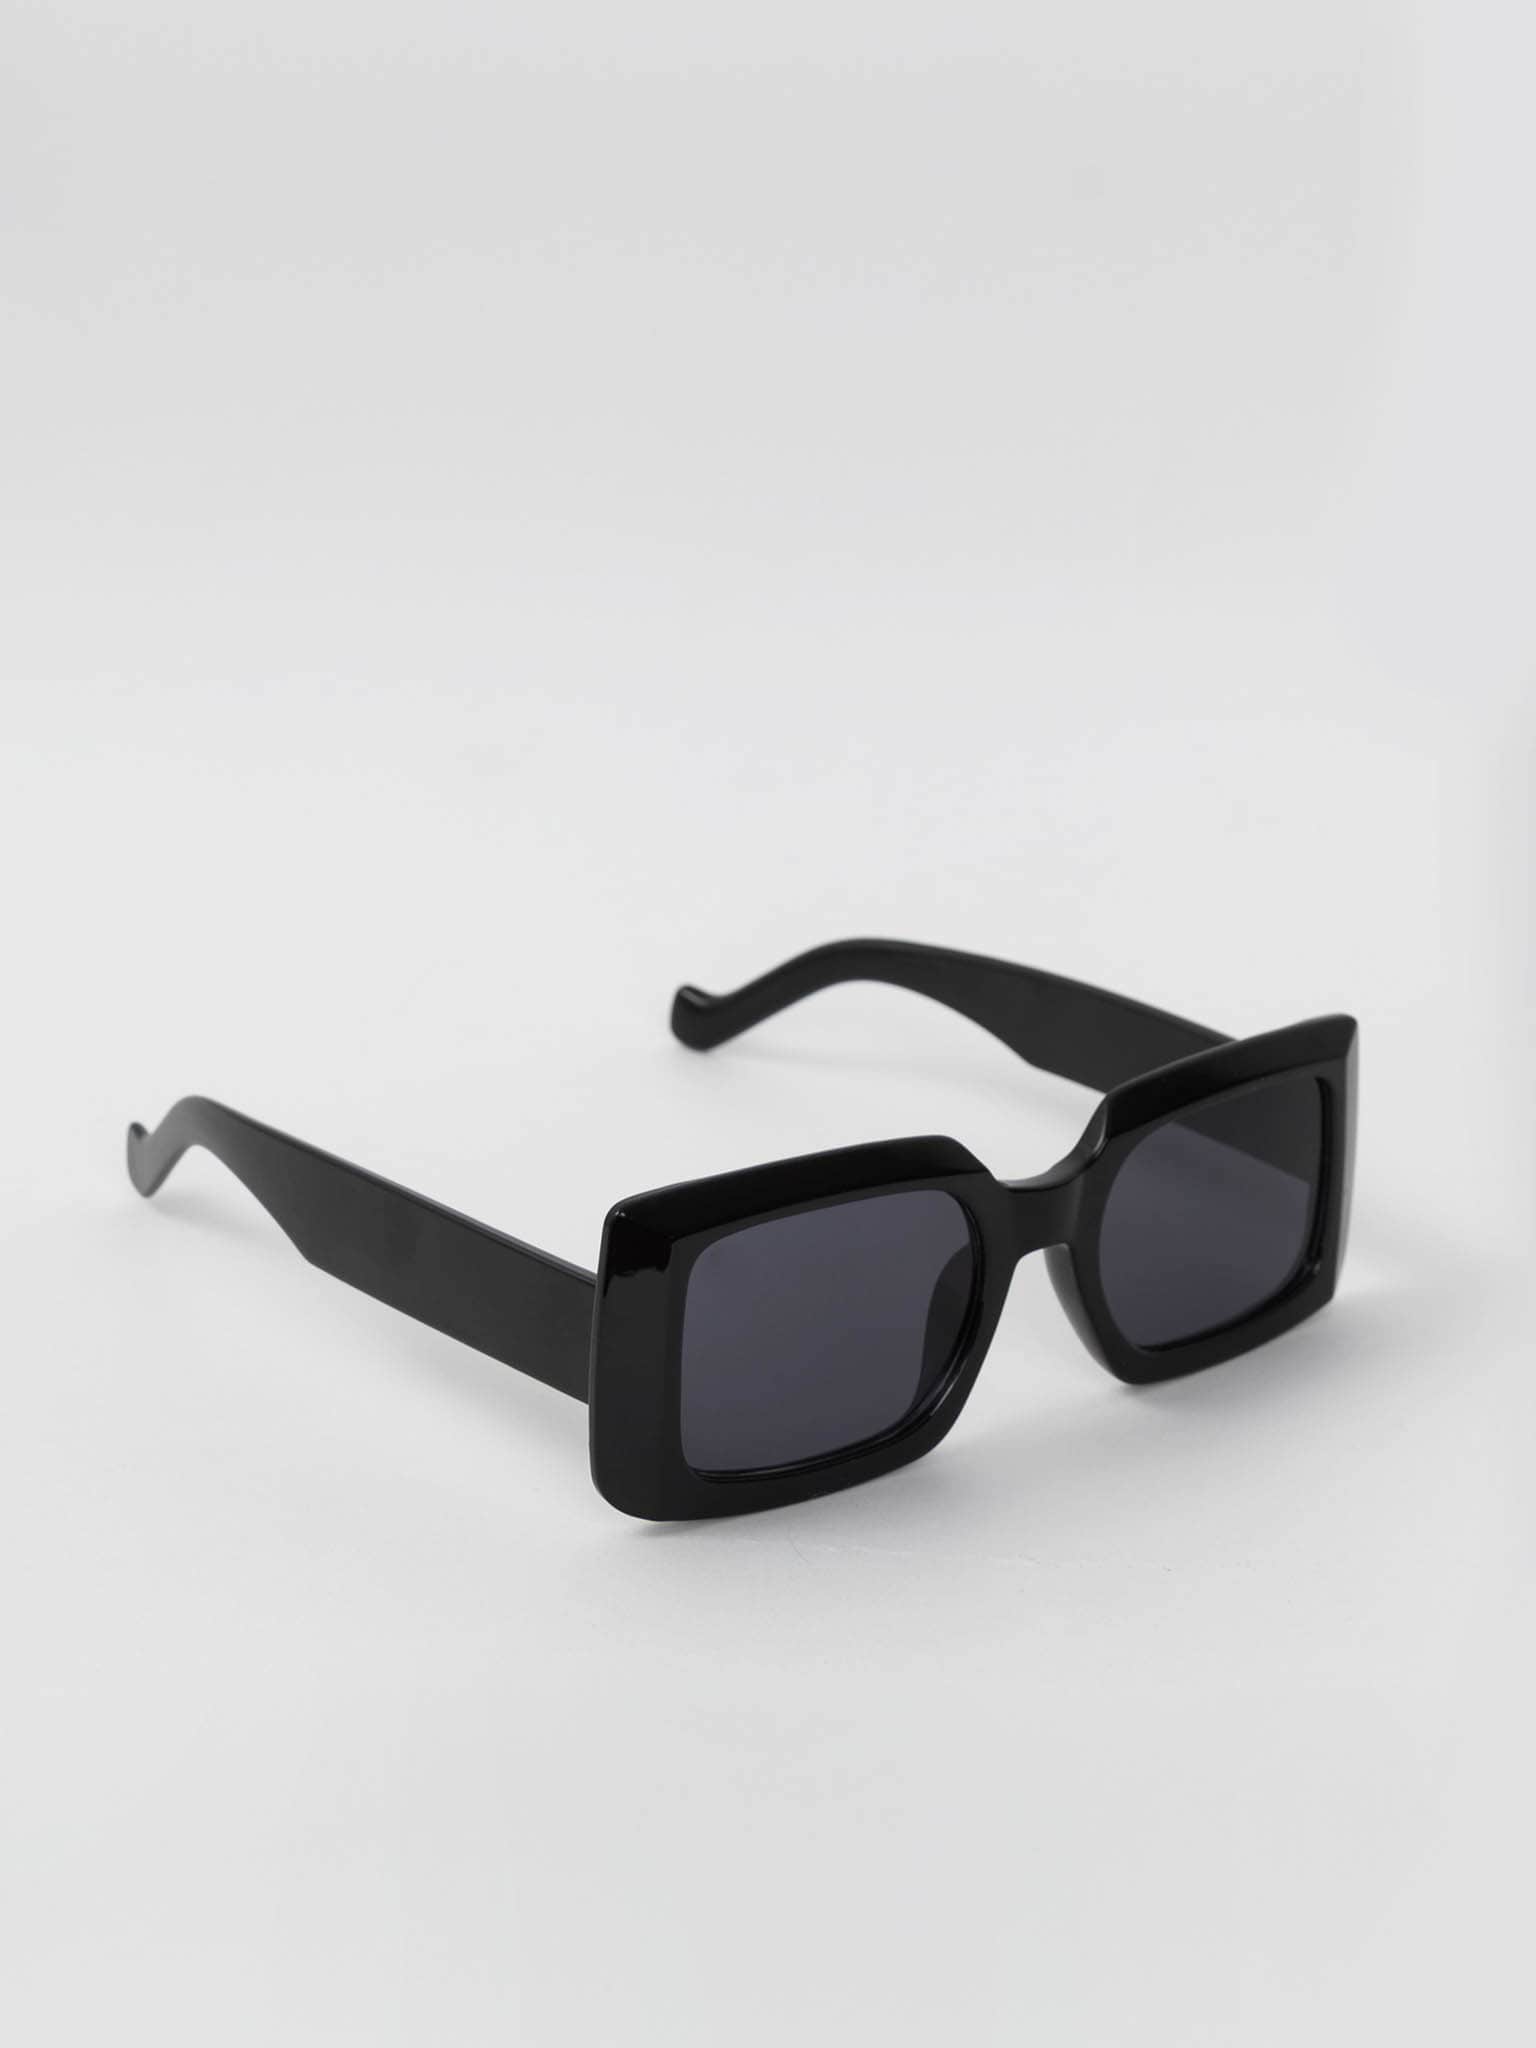 Narrow rectangular-frame sunglasses